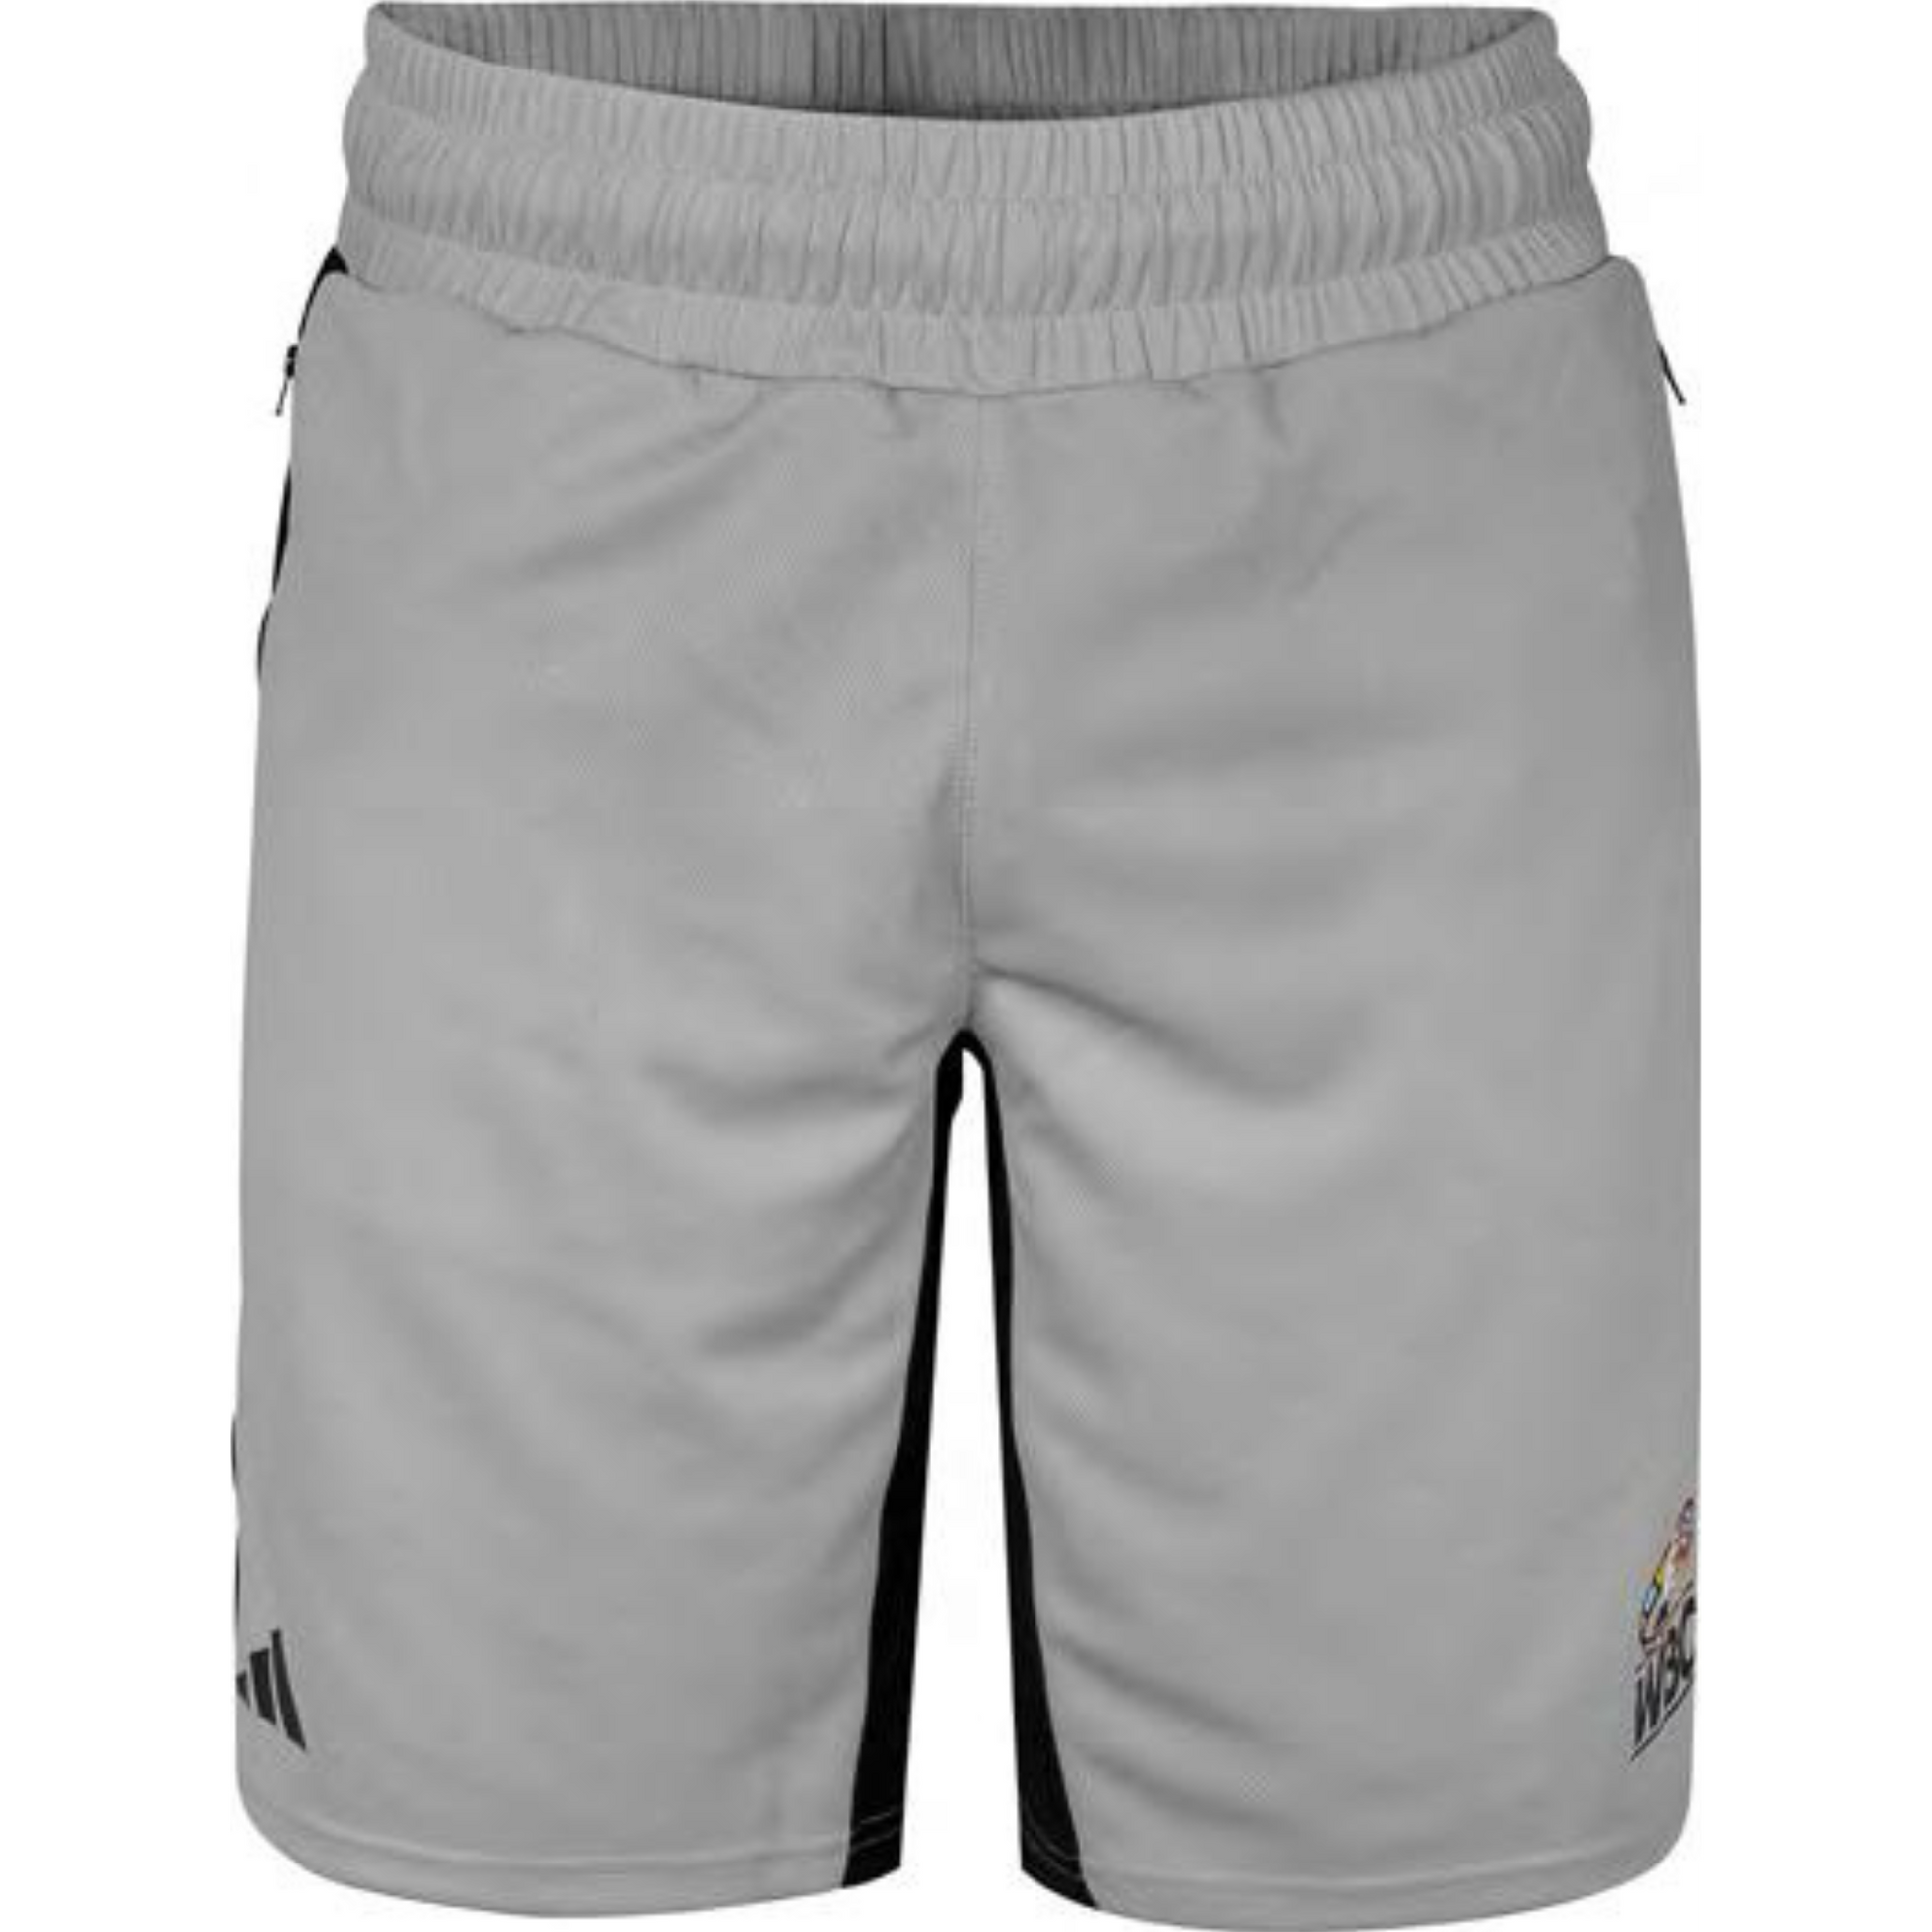 Adidas Adiwbcsh01 Wbc Approved Boxwear Tech Shorts Grey 01